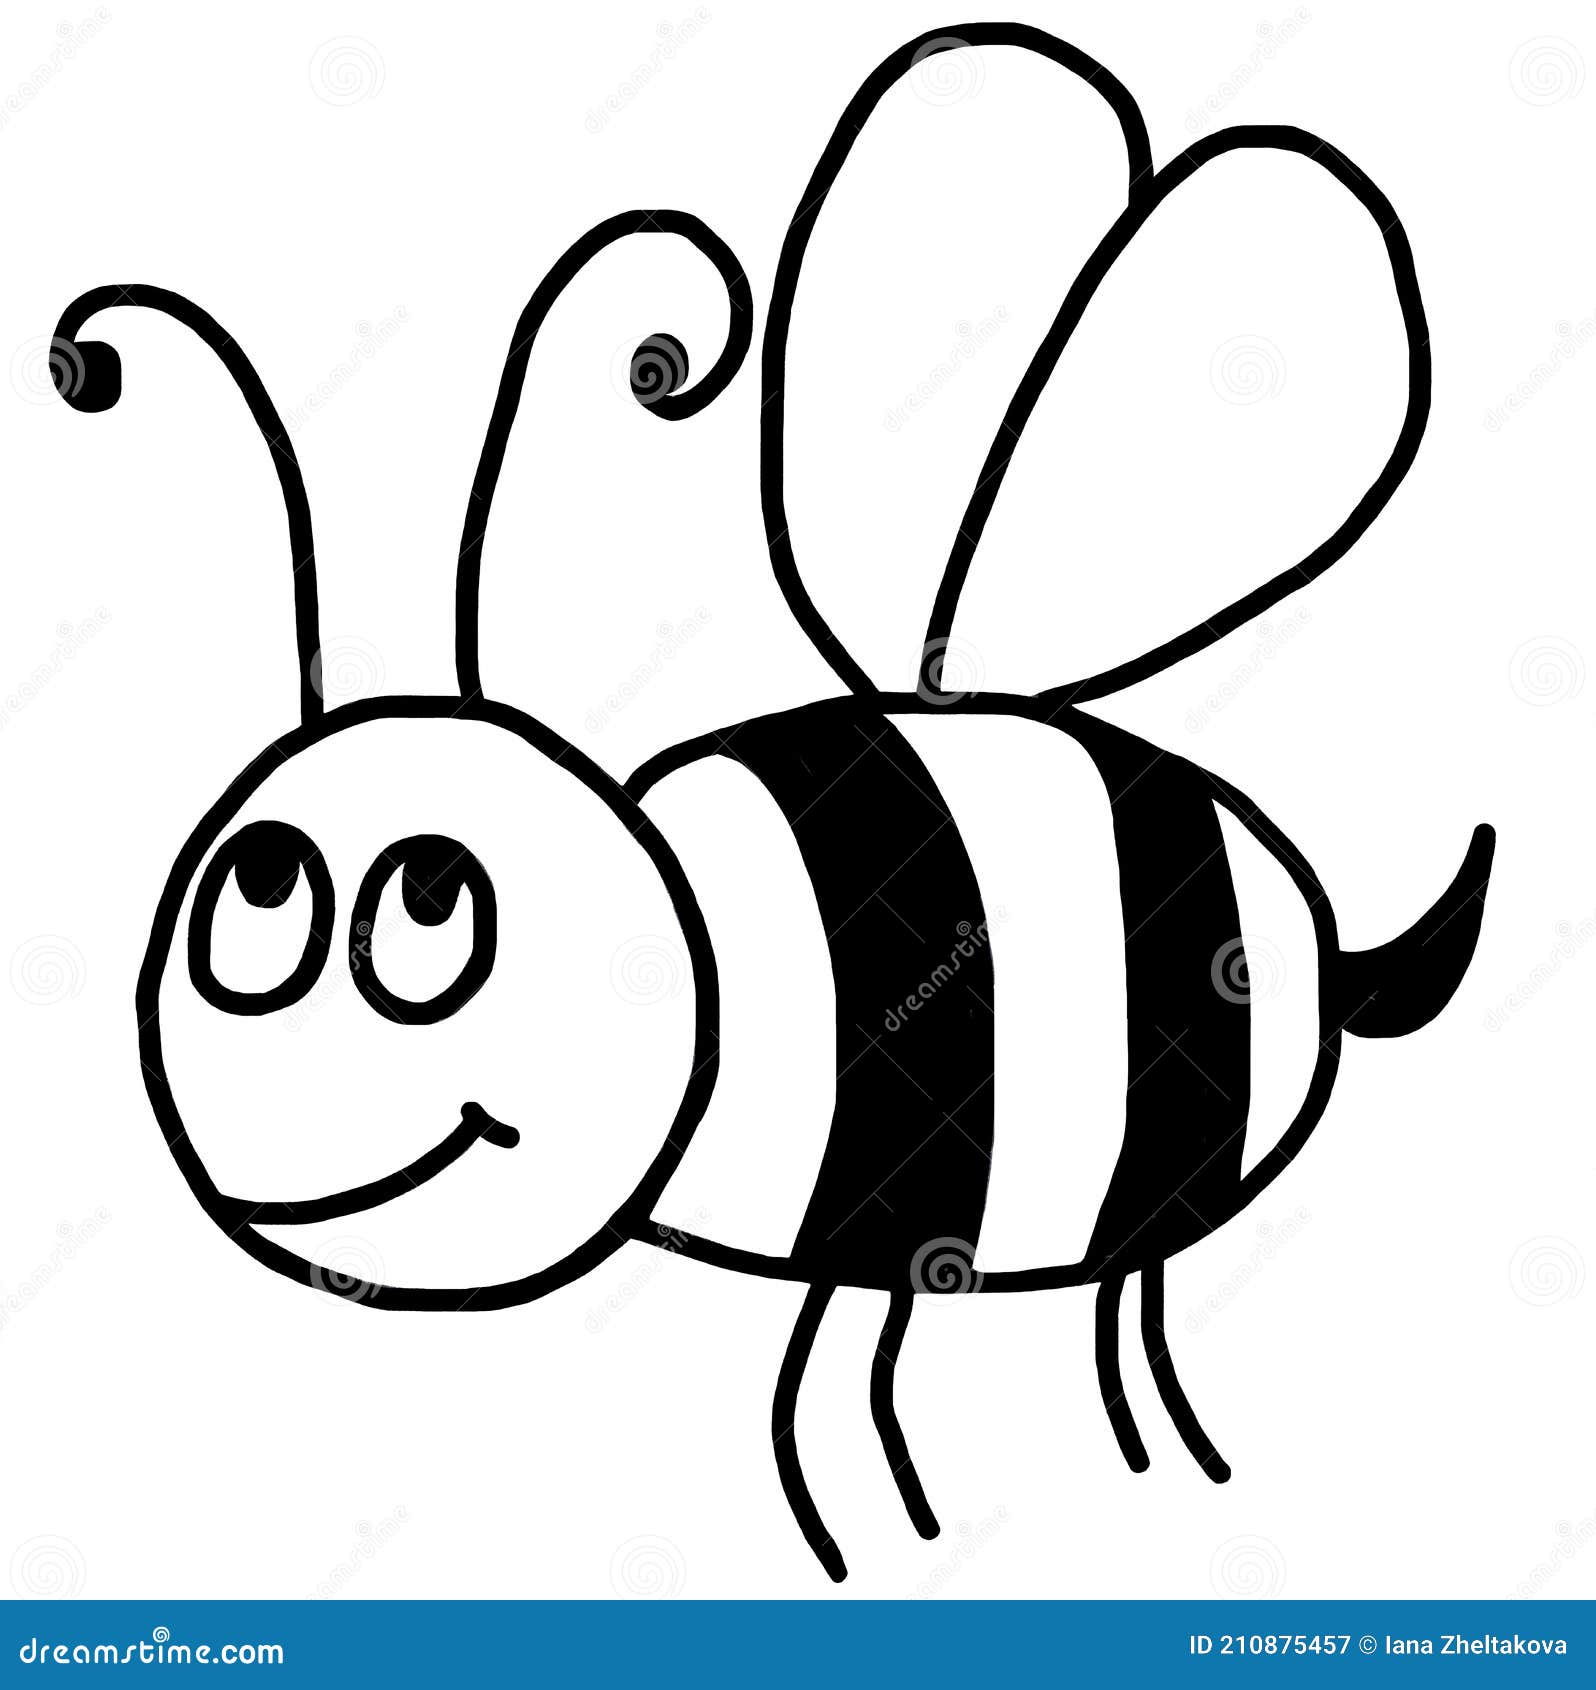 Abejorro. Un Dibujo Gráfico De Dibujos Animados En Blanco Y Negro De Una  Abeja O Abejorro. Insectos Silvestres. Stock de ilustración - Ilustración  de cuadro, insectos: 210875457